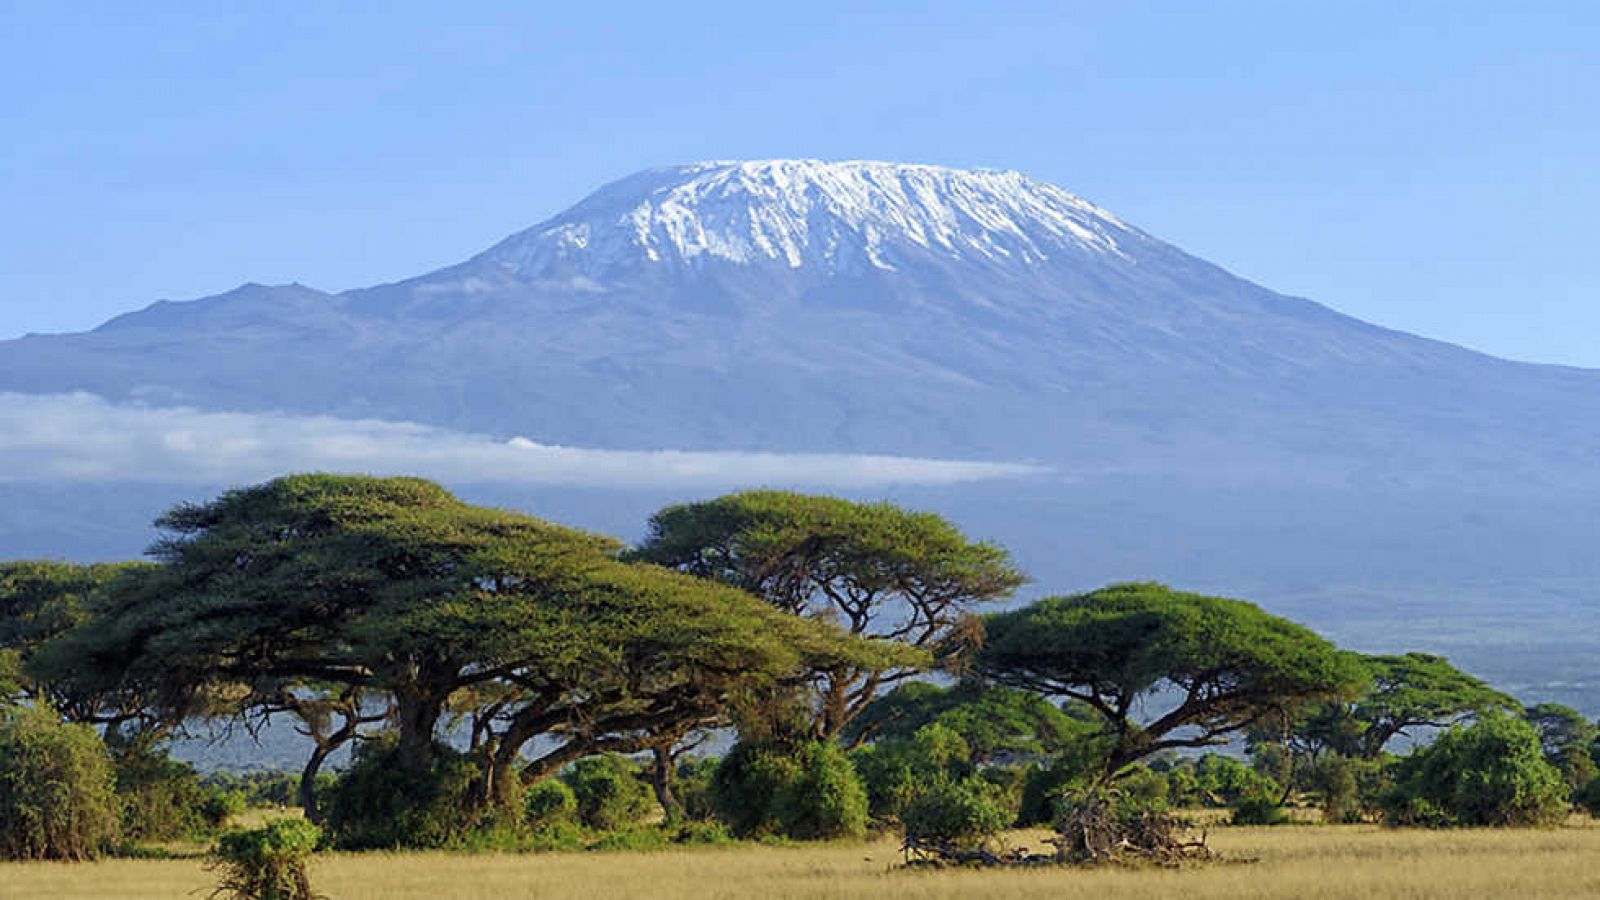 Grandes documentales - Patrimonio de la Humanidad: Parque nacional de Kilimanjaro